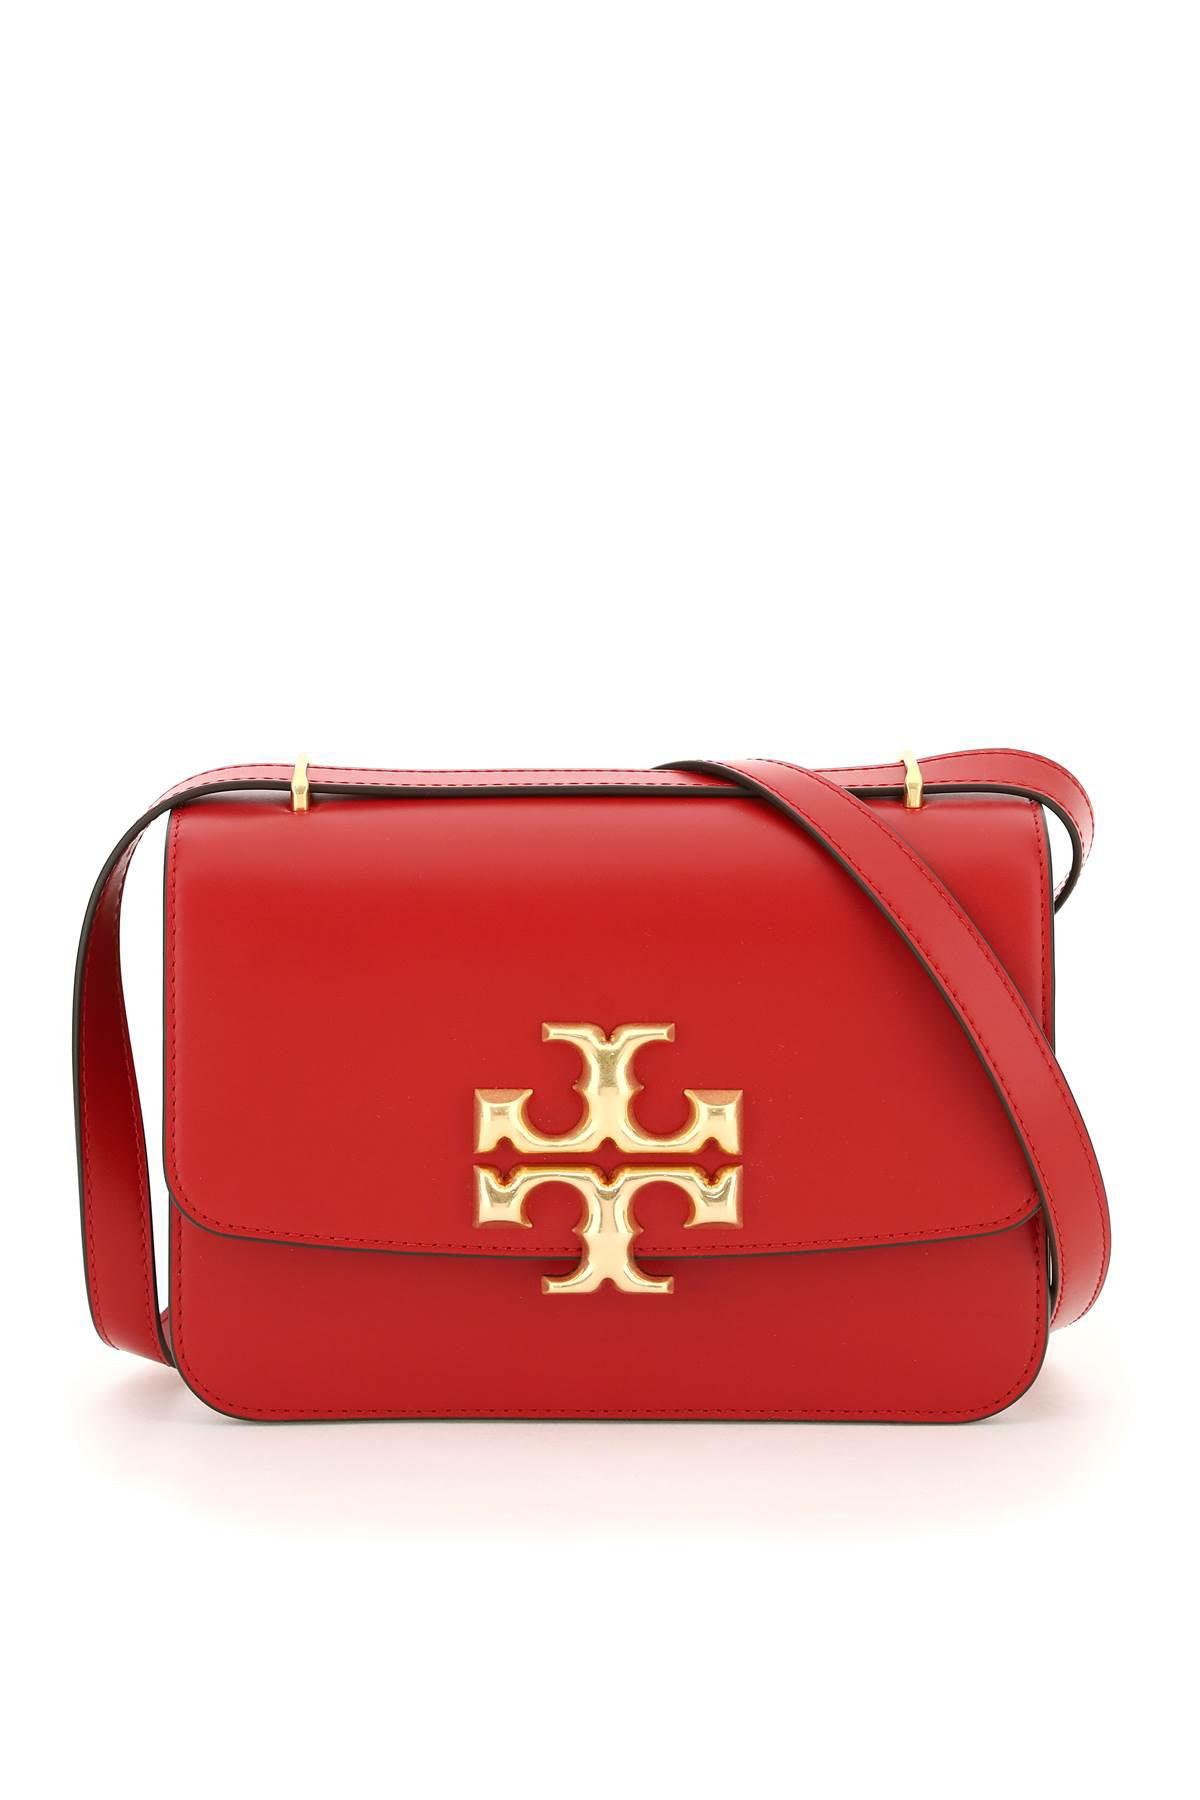 Tory Burch Red Shoulder Bag on Sale | bellvalefarms.com